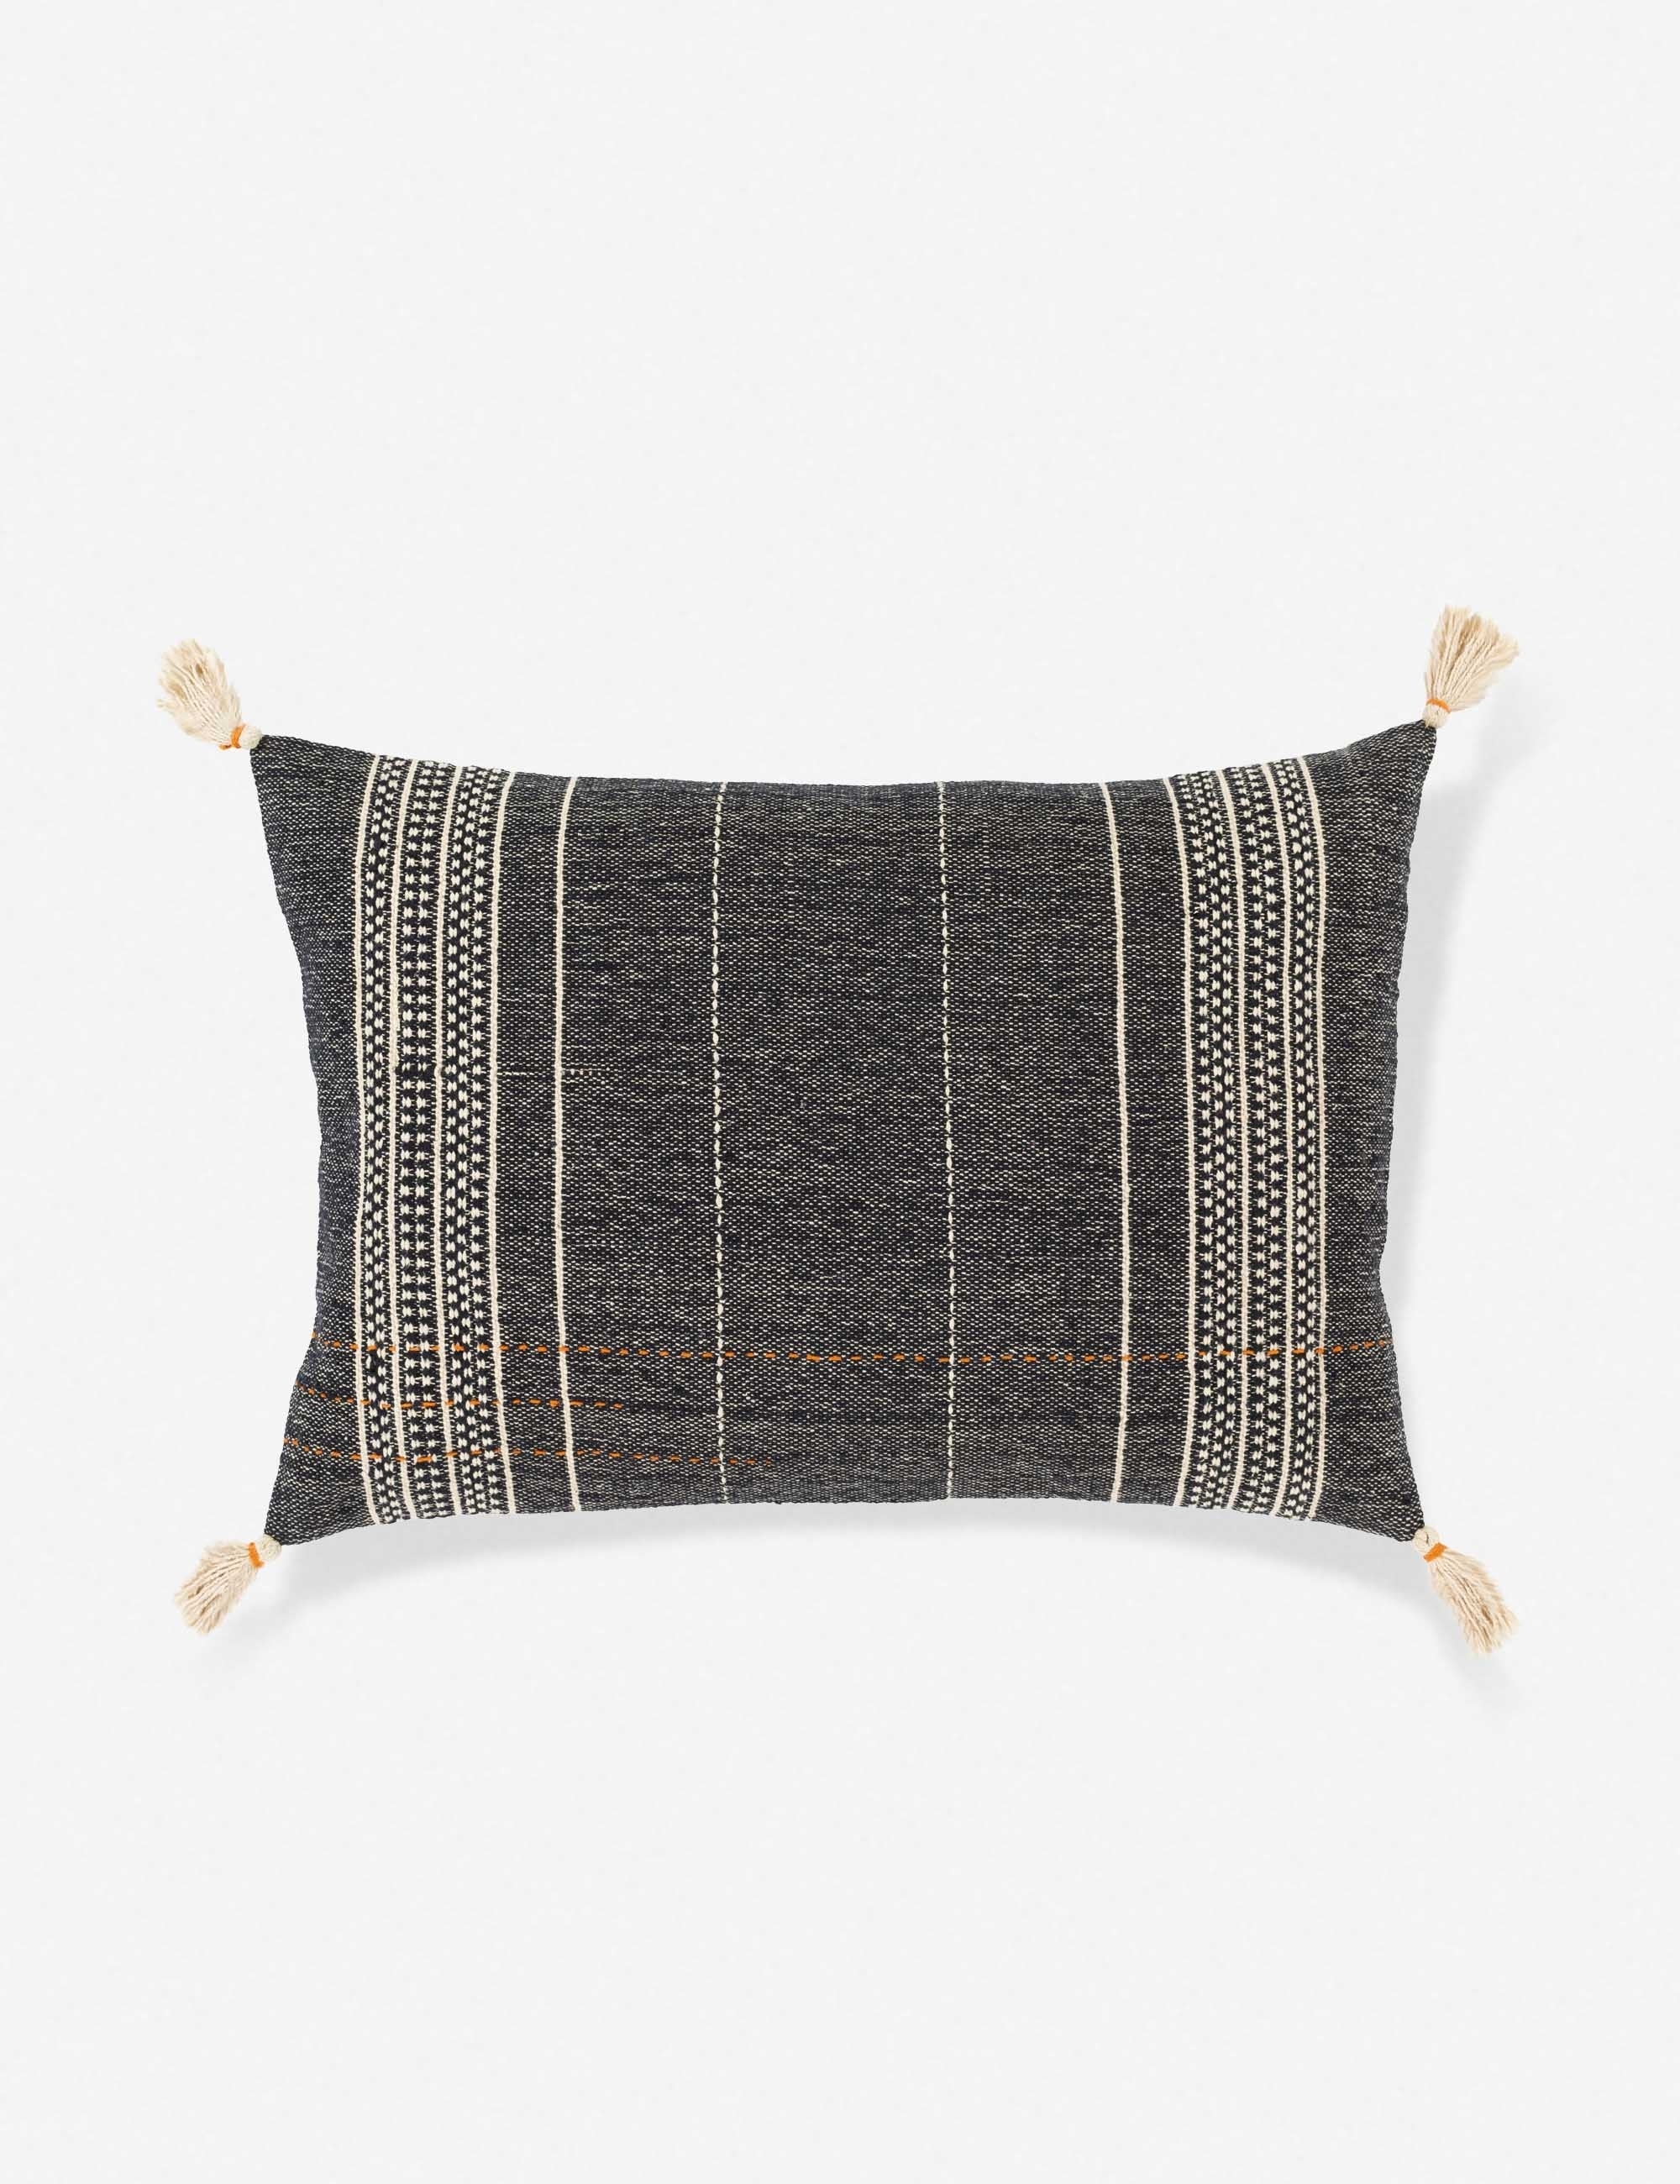 Mandisa Lumbar Pillow, Charcoal 16" x 24" - Image 0